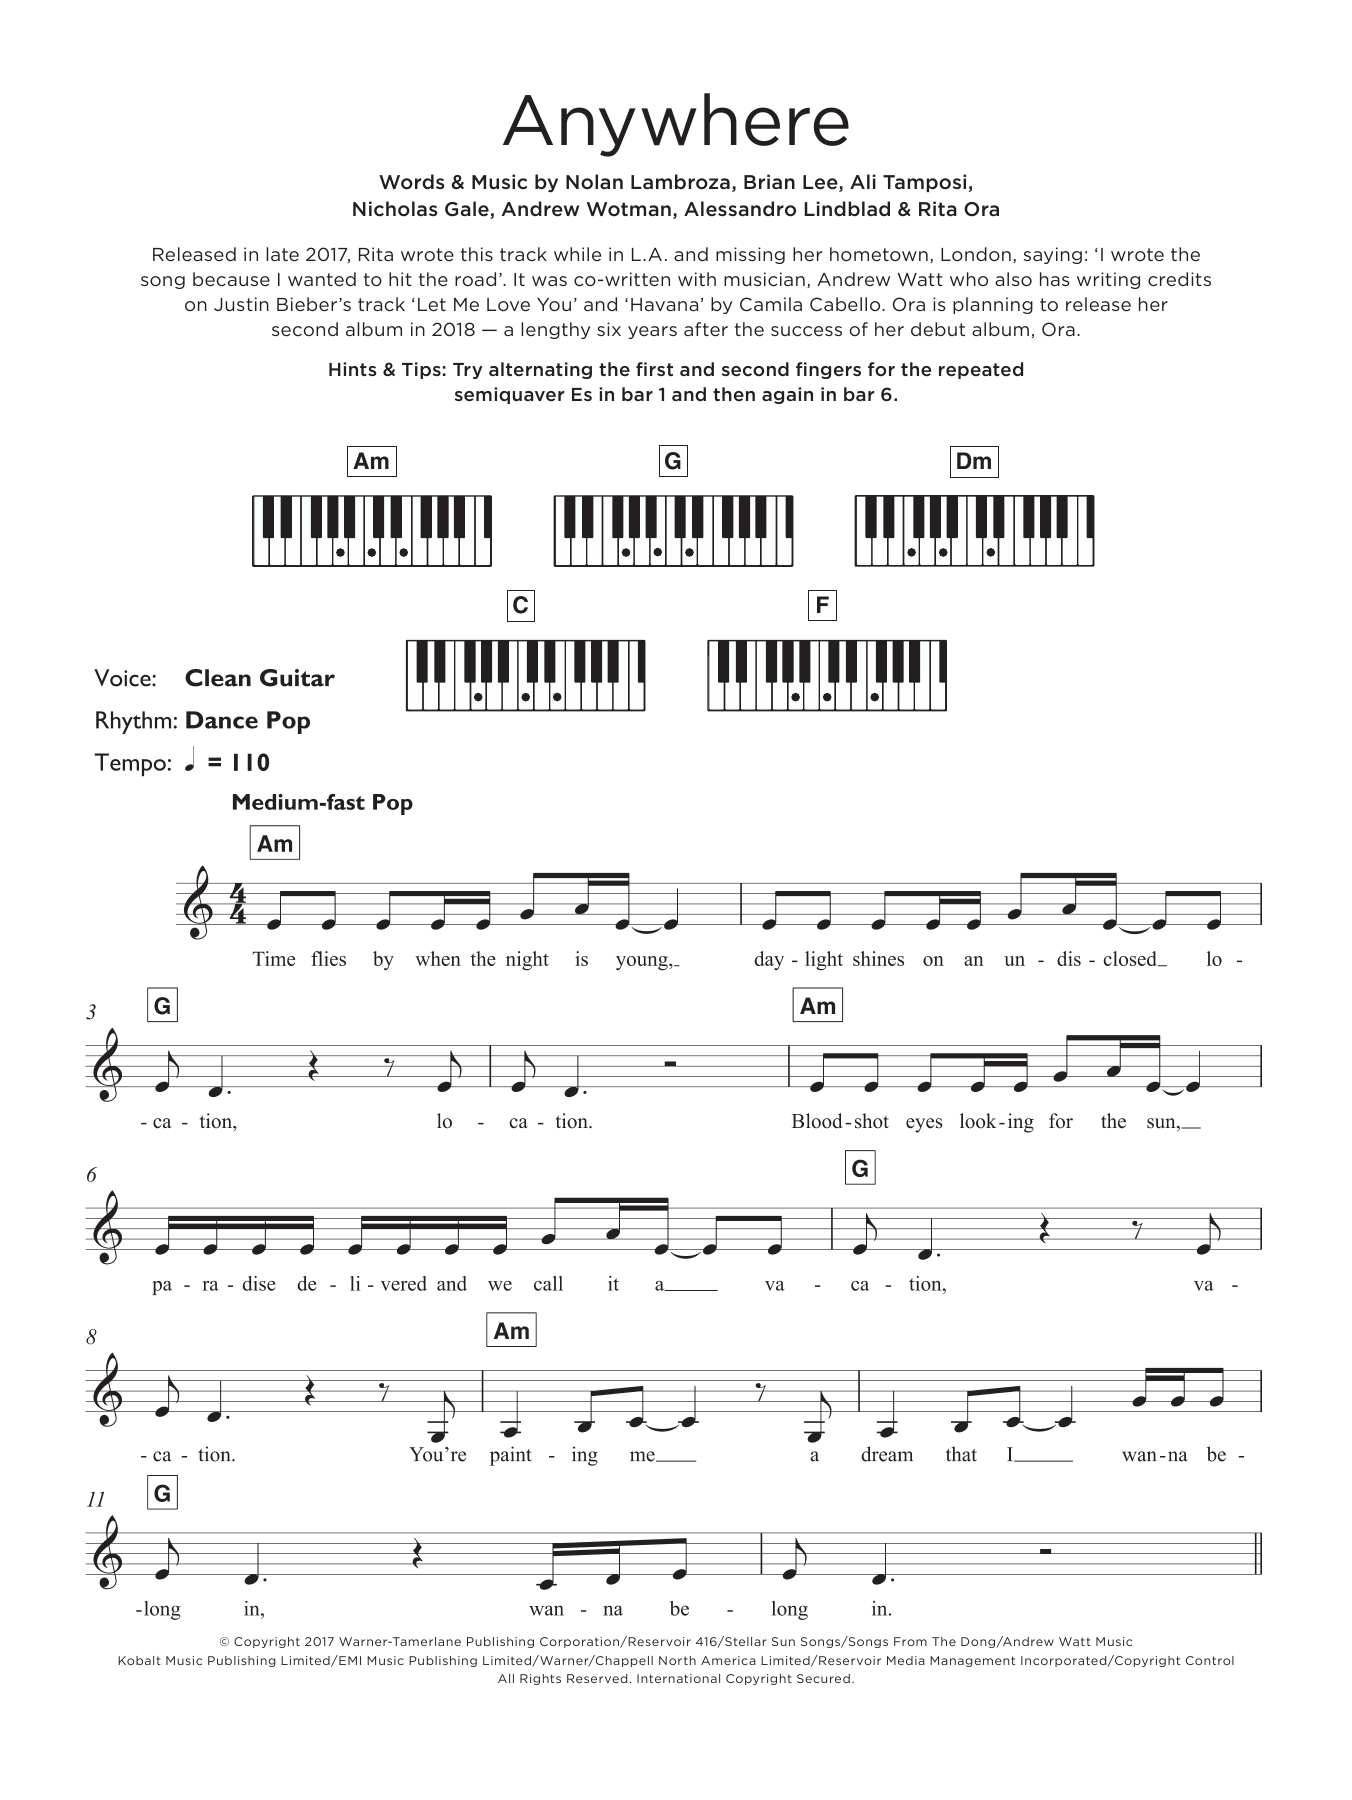 Rita Ora Anywhere Sheet Music Notes & Chords for Beginner Ukulele - Download or Print PDF